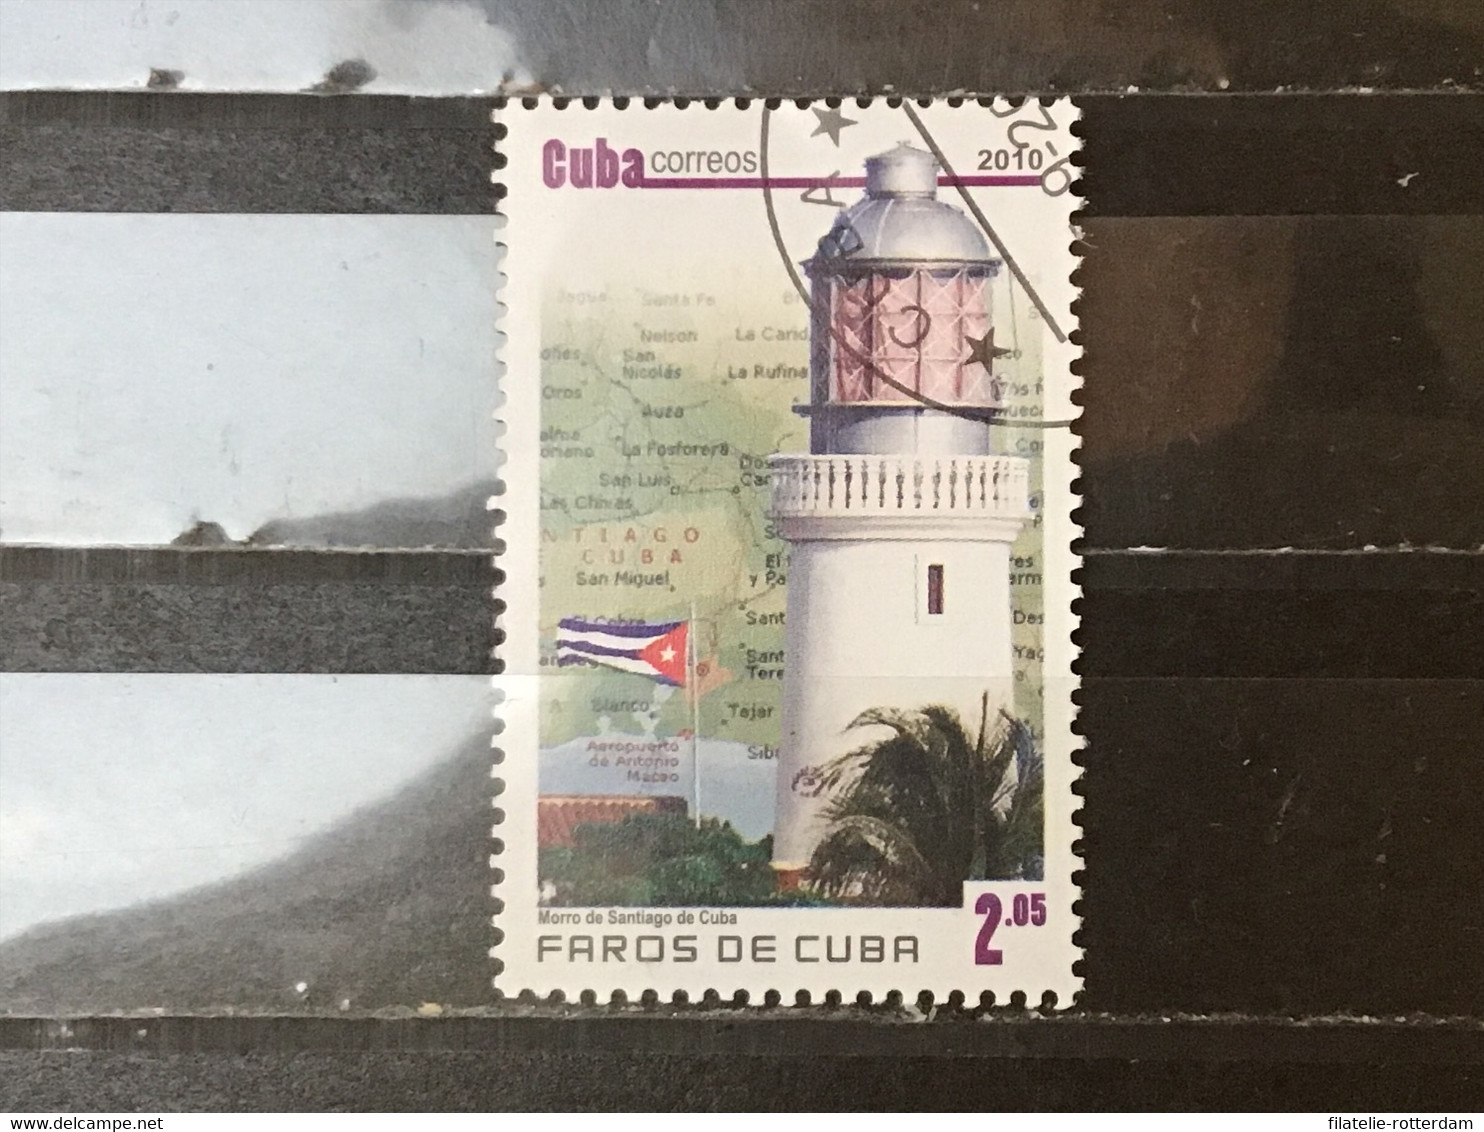 Cuba - Vuurtorens (2.05) 2010 - Gebraucht